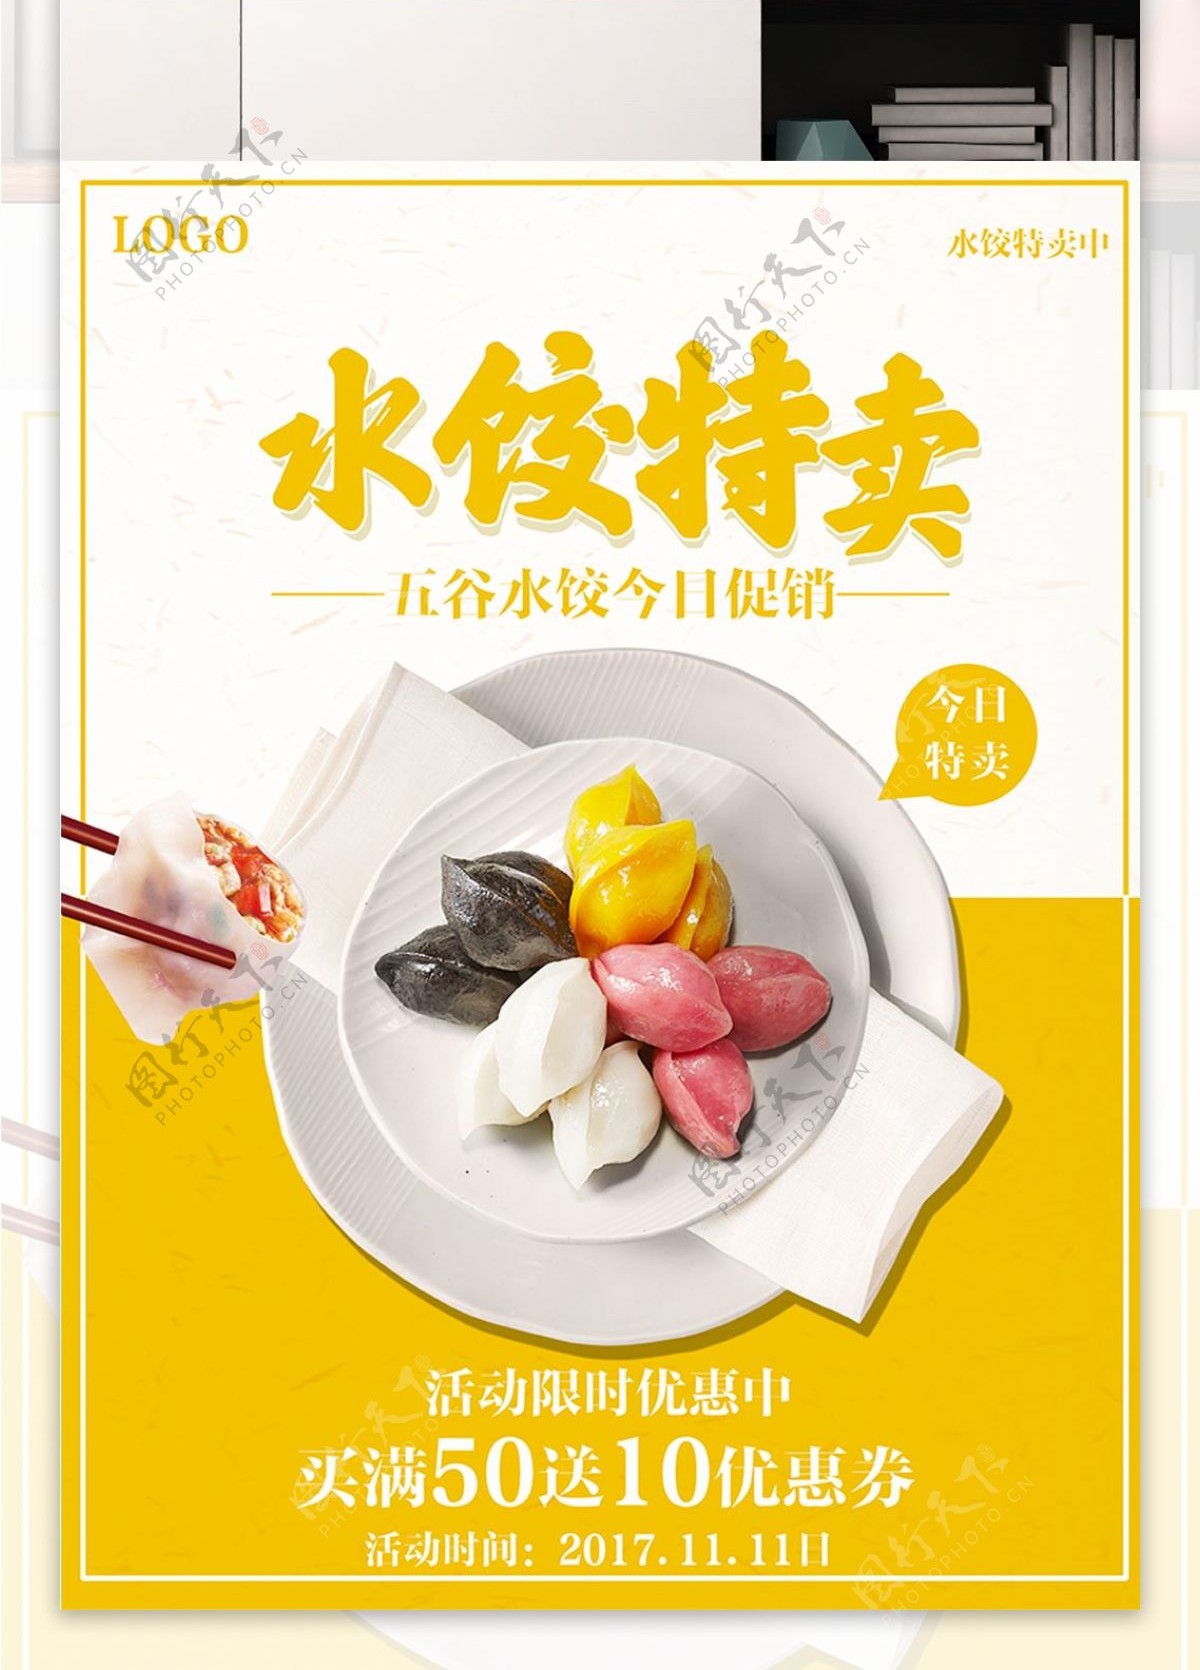 黄白色背景水饺特卖美食促销海报设计